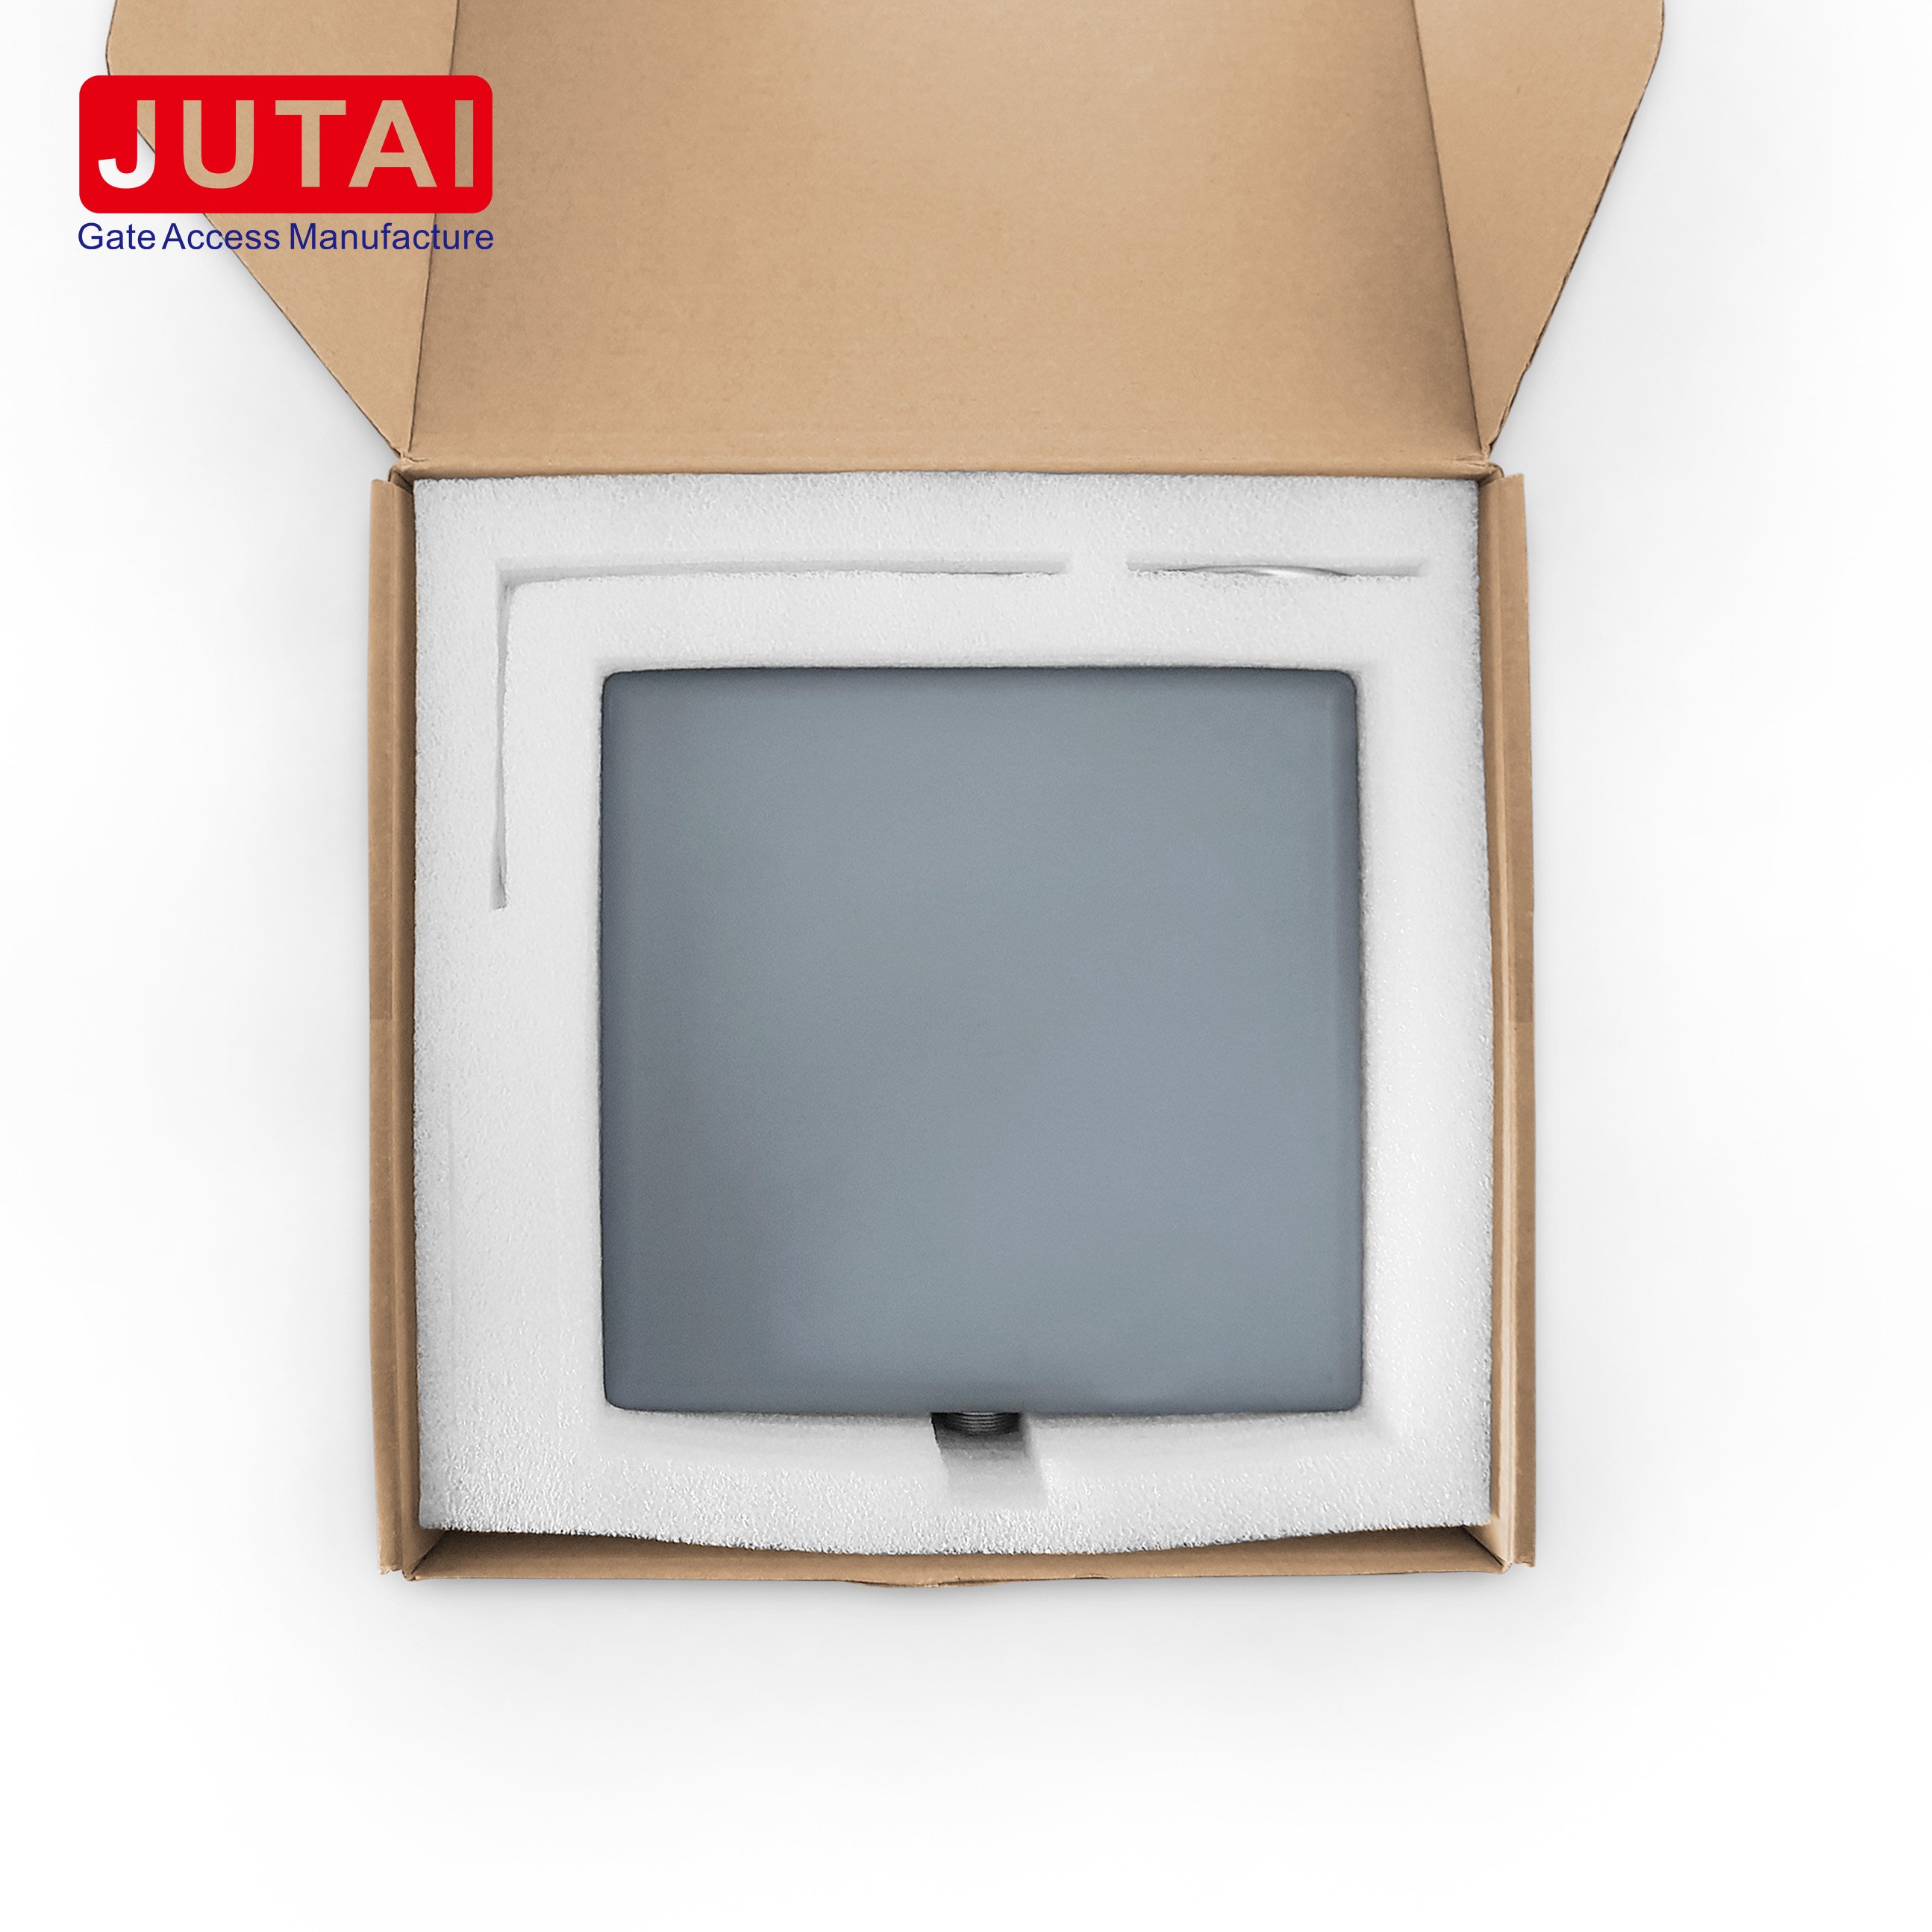 JUTAI 2.45G lange afstand actieve RFID-lezer